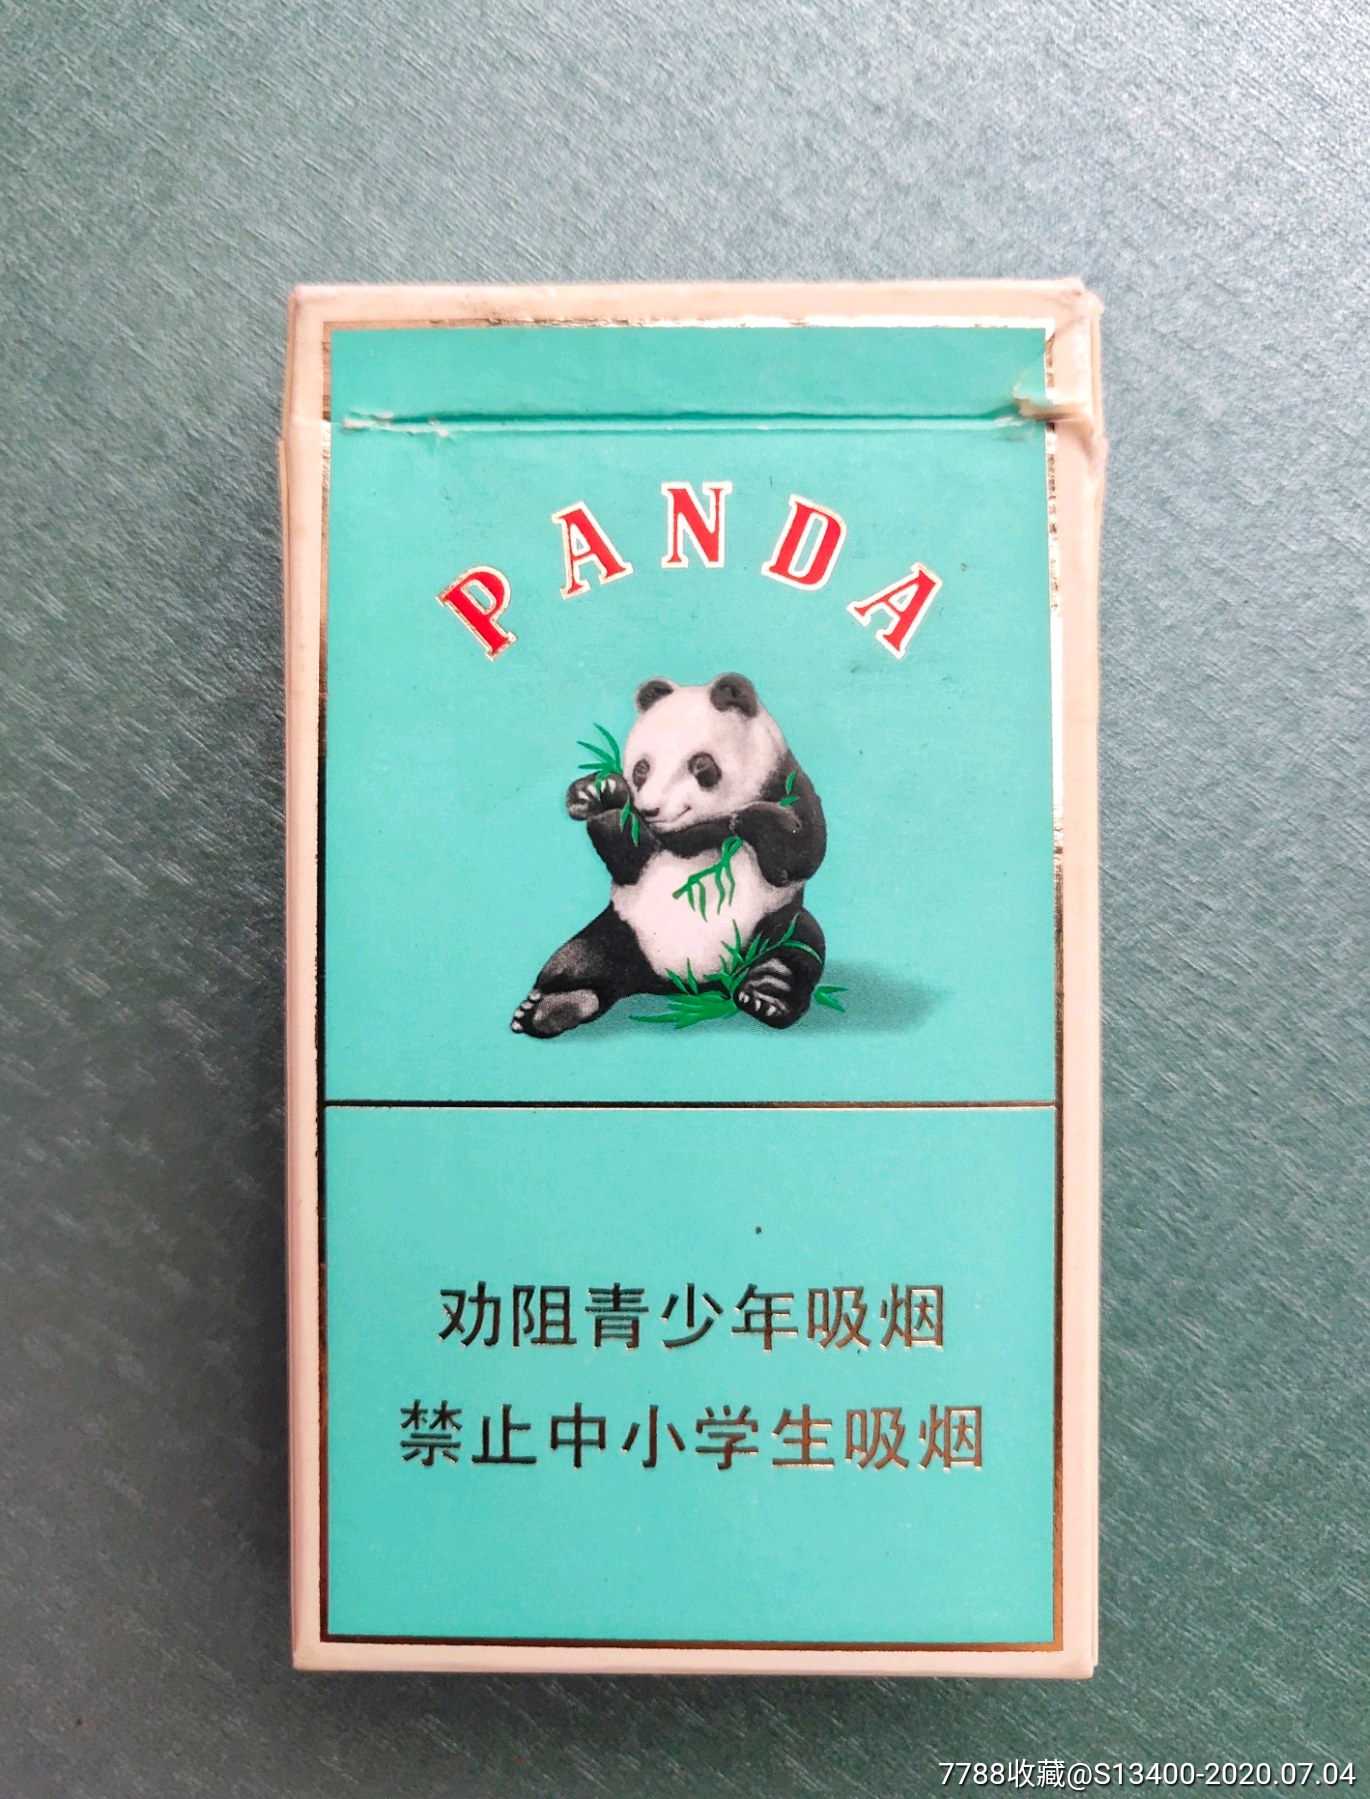 大熊猫香烟未交税图片